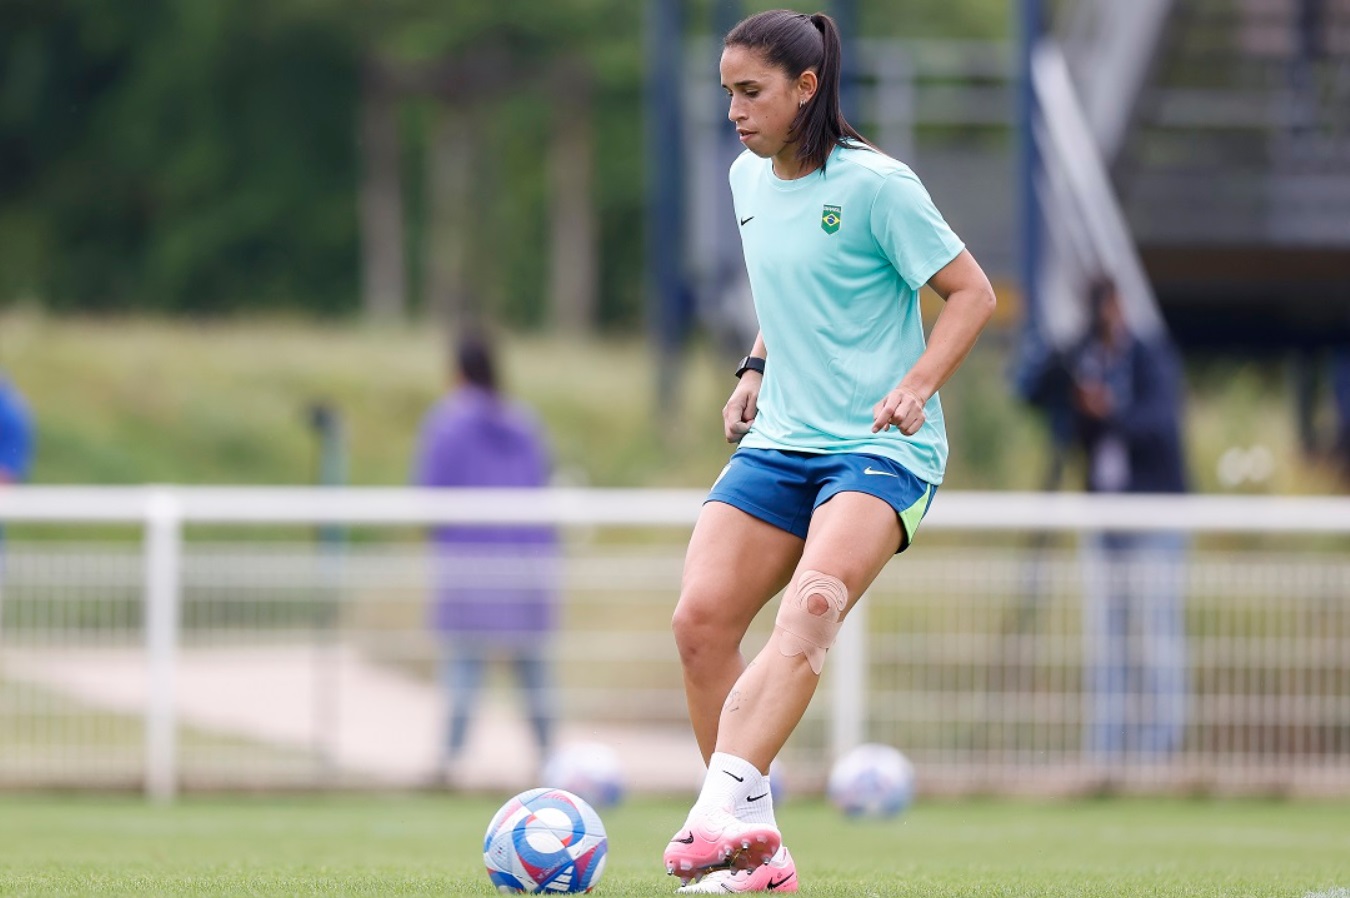 Futebol feminino: baiana Rafaelle Souza conciliou carreira no futebol com curso de engenharia